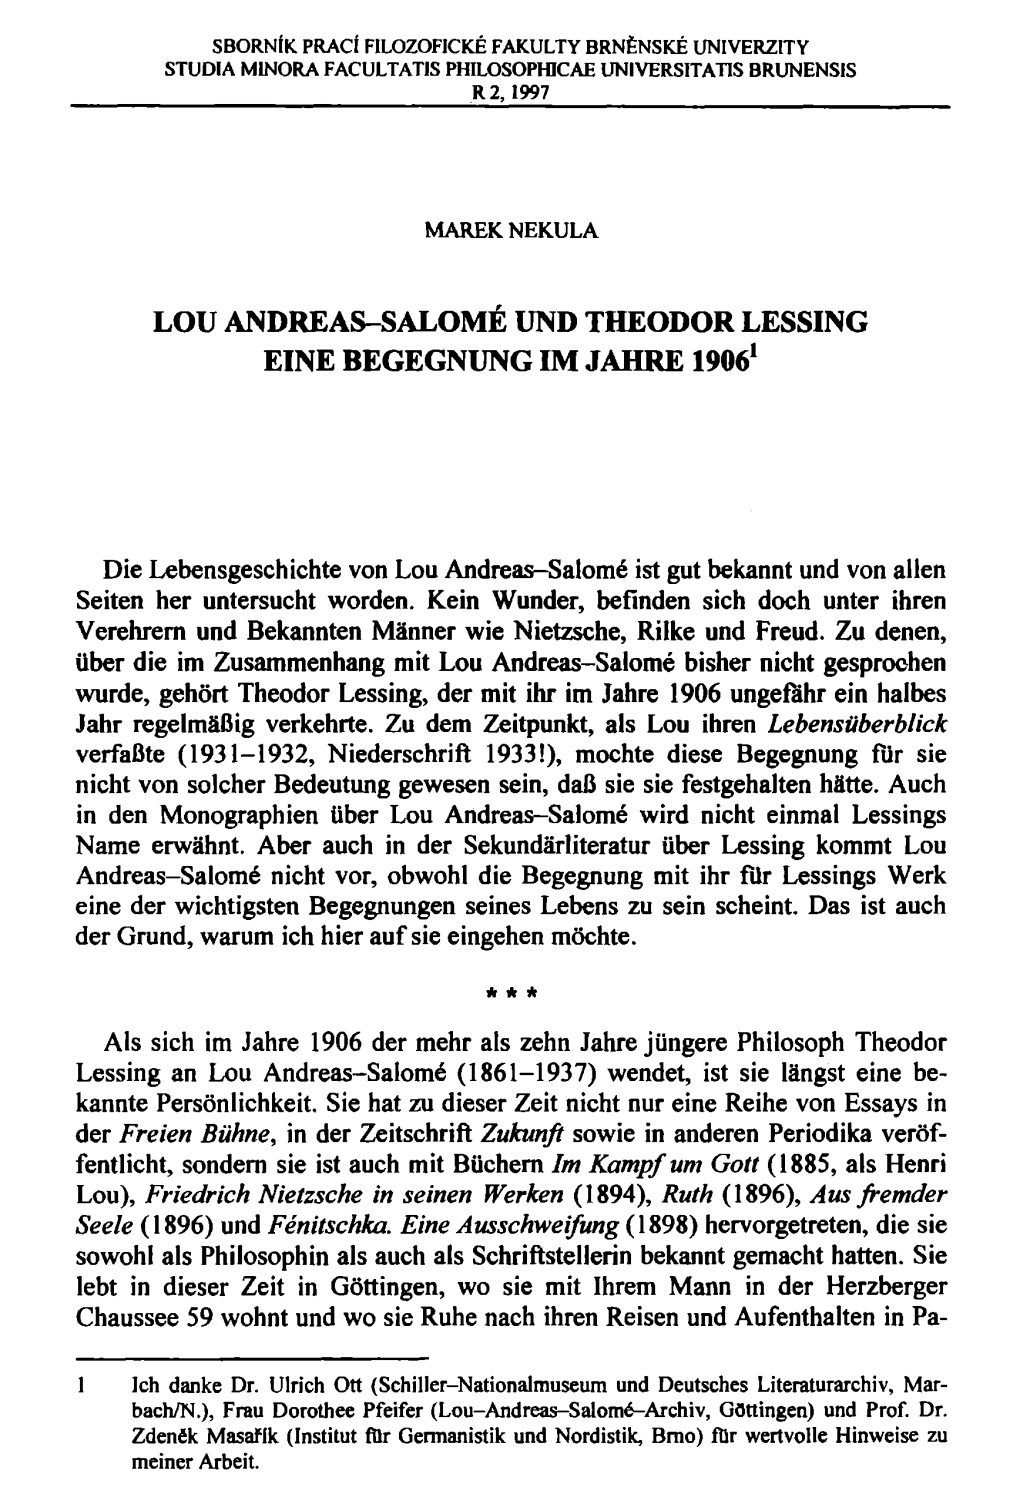 Lou Andreas-Salome Und Theodor Lessing Eine Begegnung Im Jahre 19061